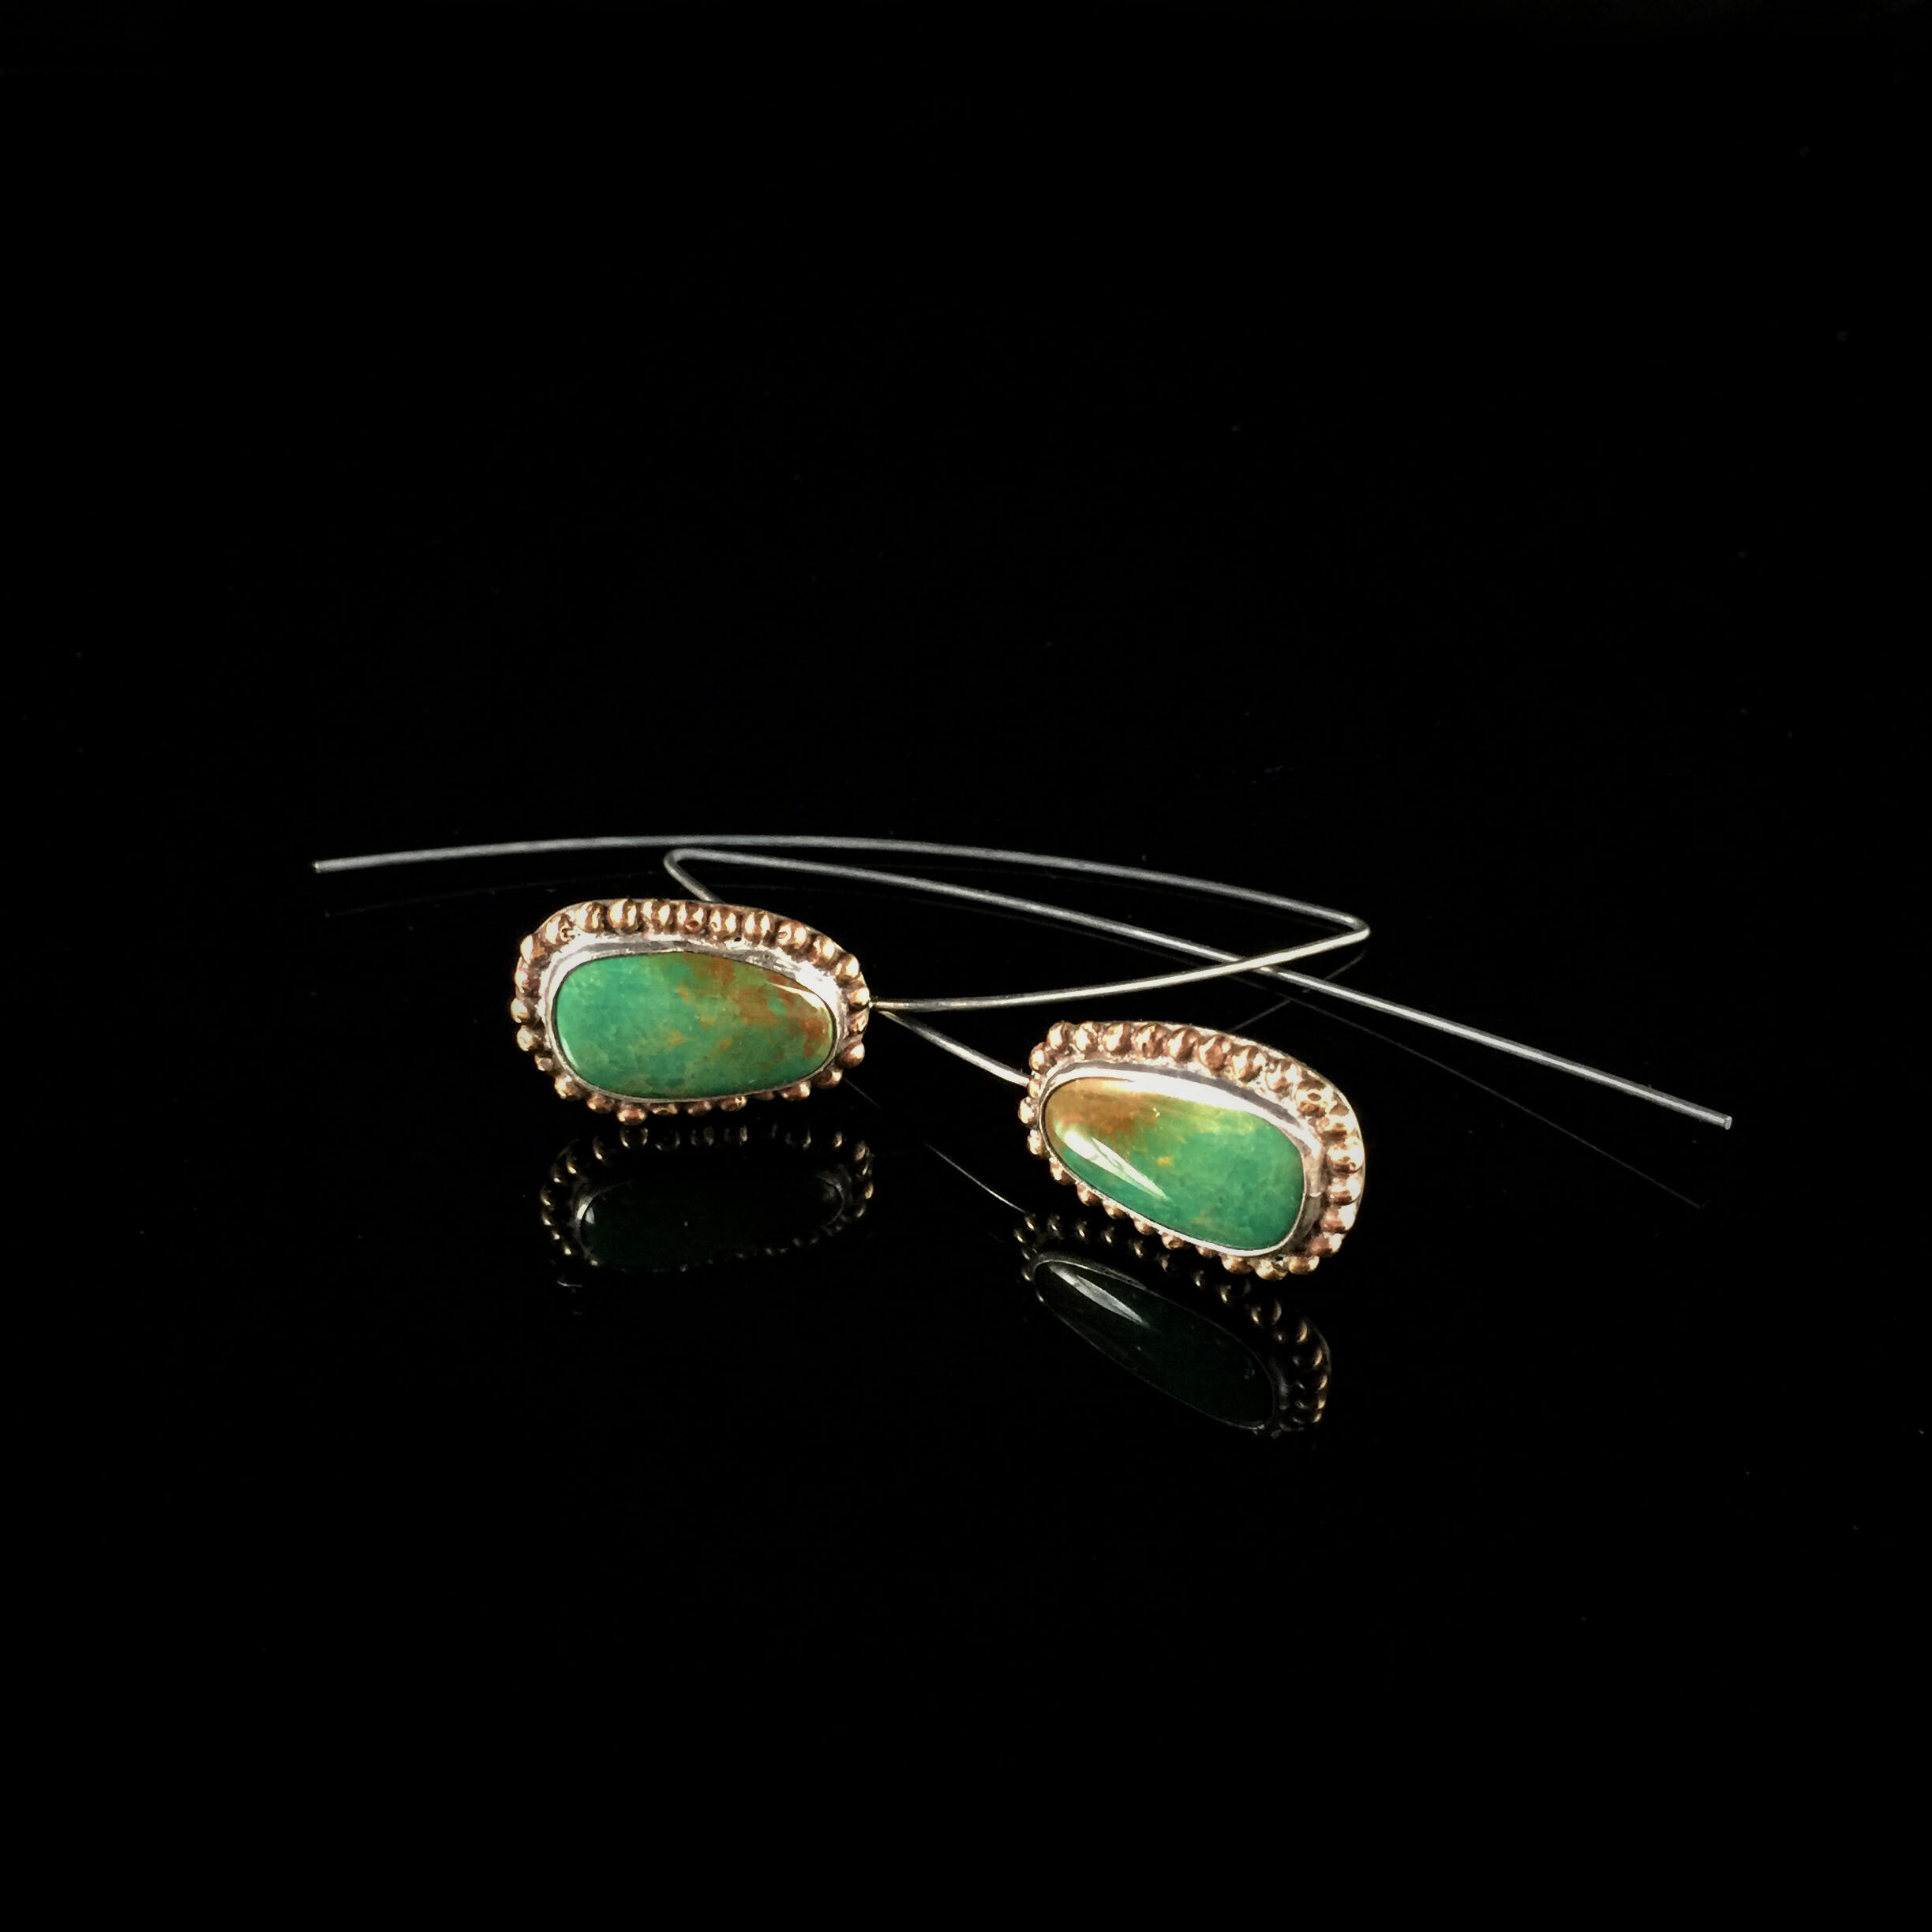 royston turquoise magdalene set earrings sterling silver brass.jpg